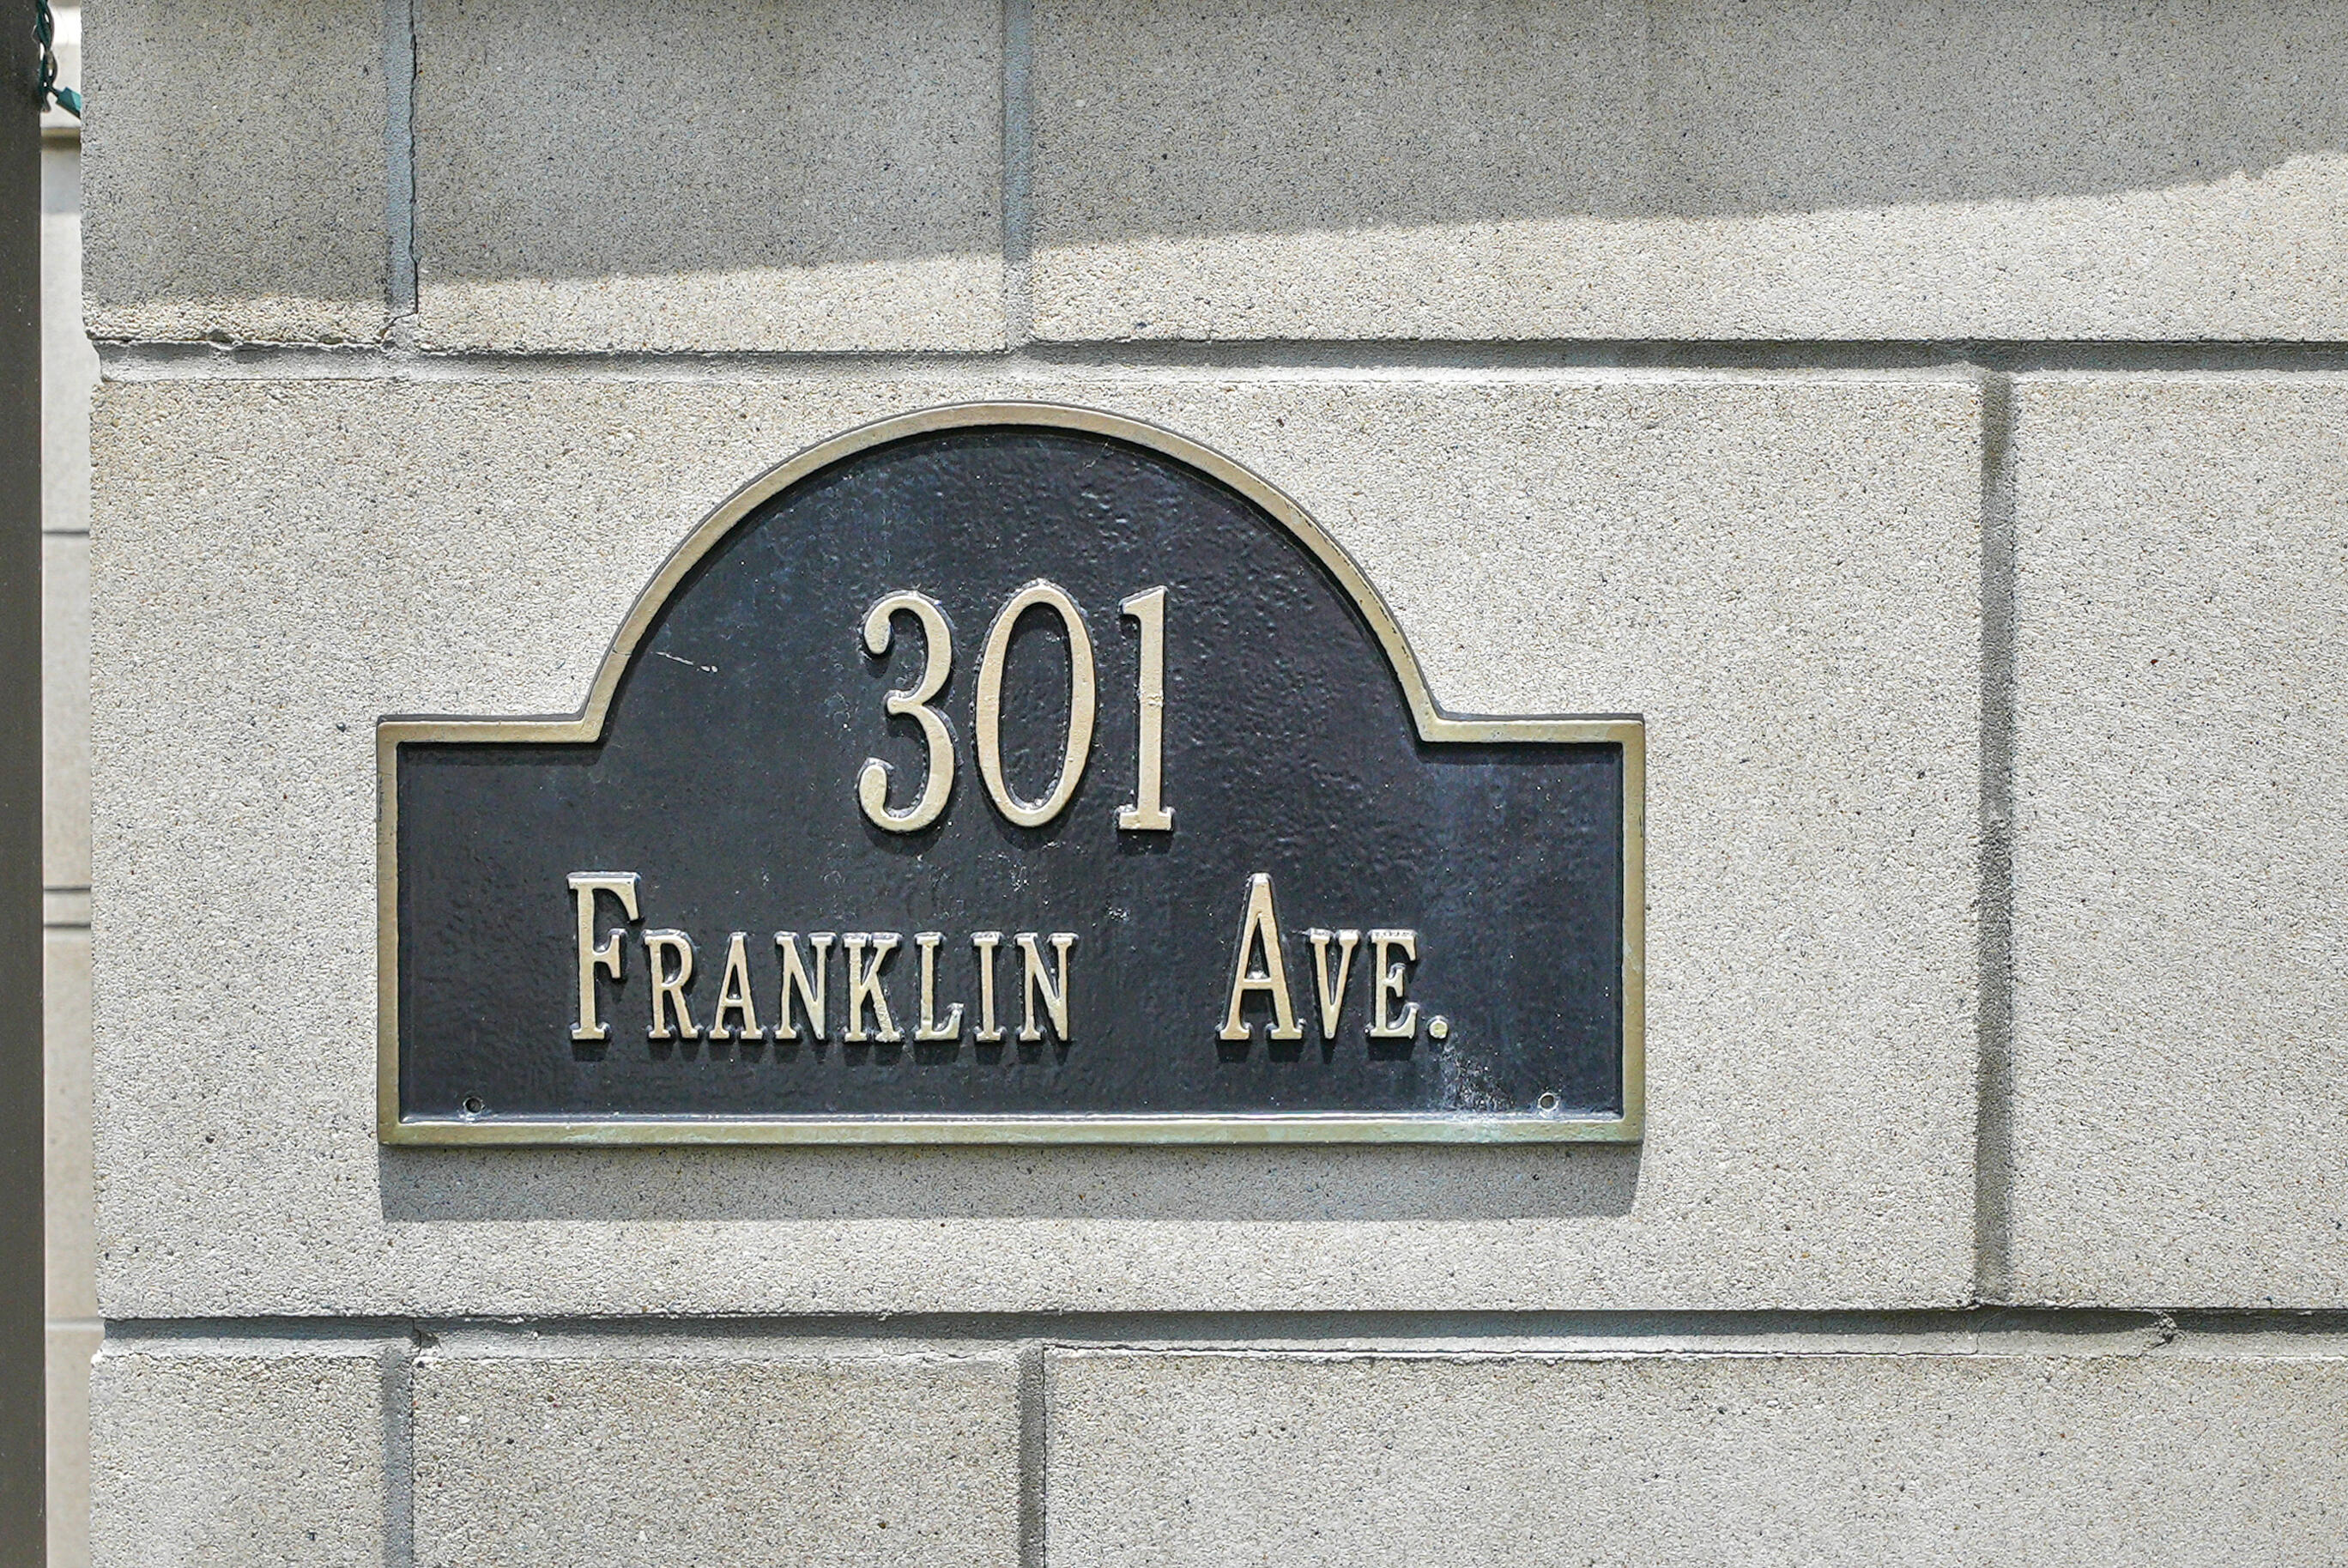 Photo 2 of 46 of 301 Franklin Avenue condo